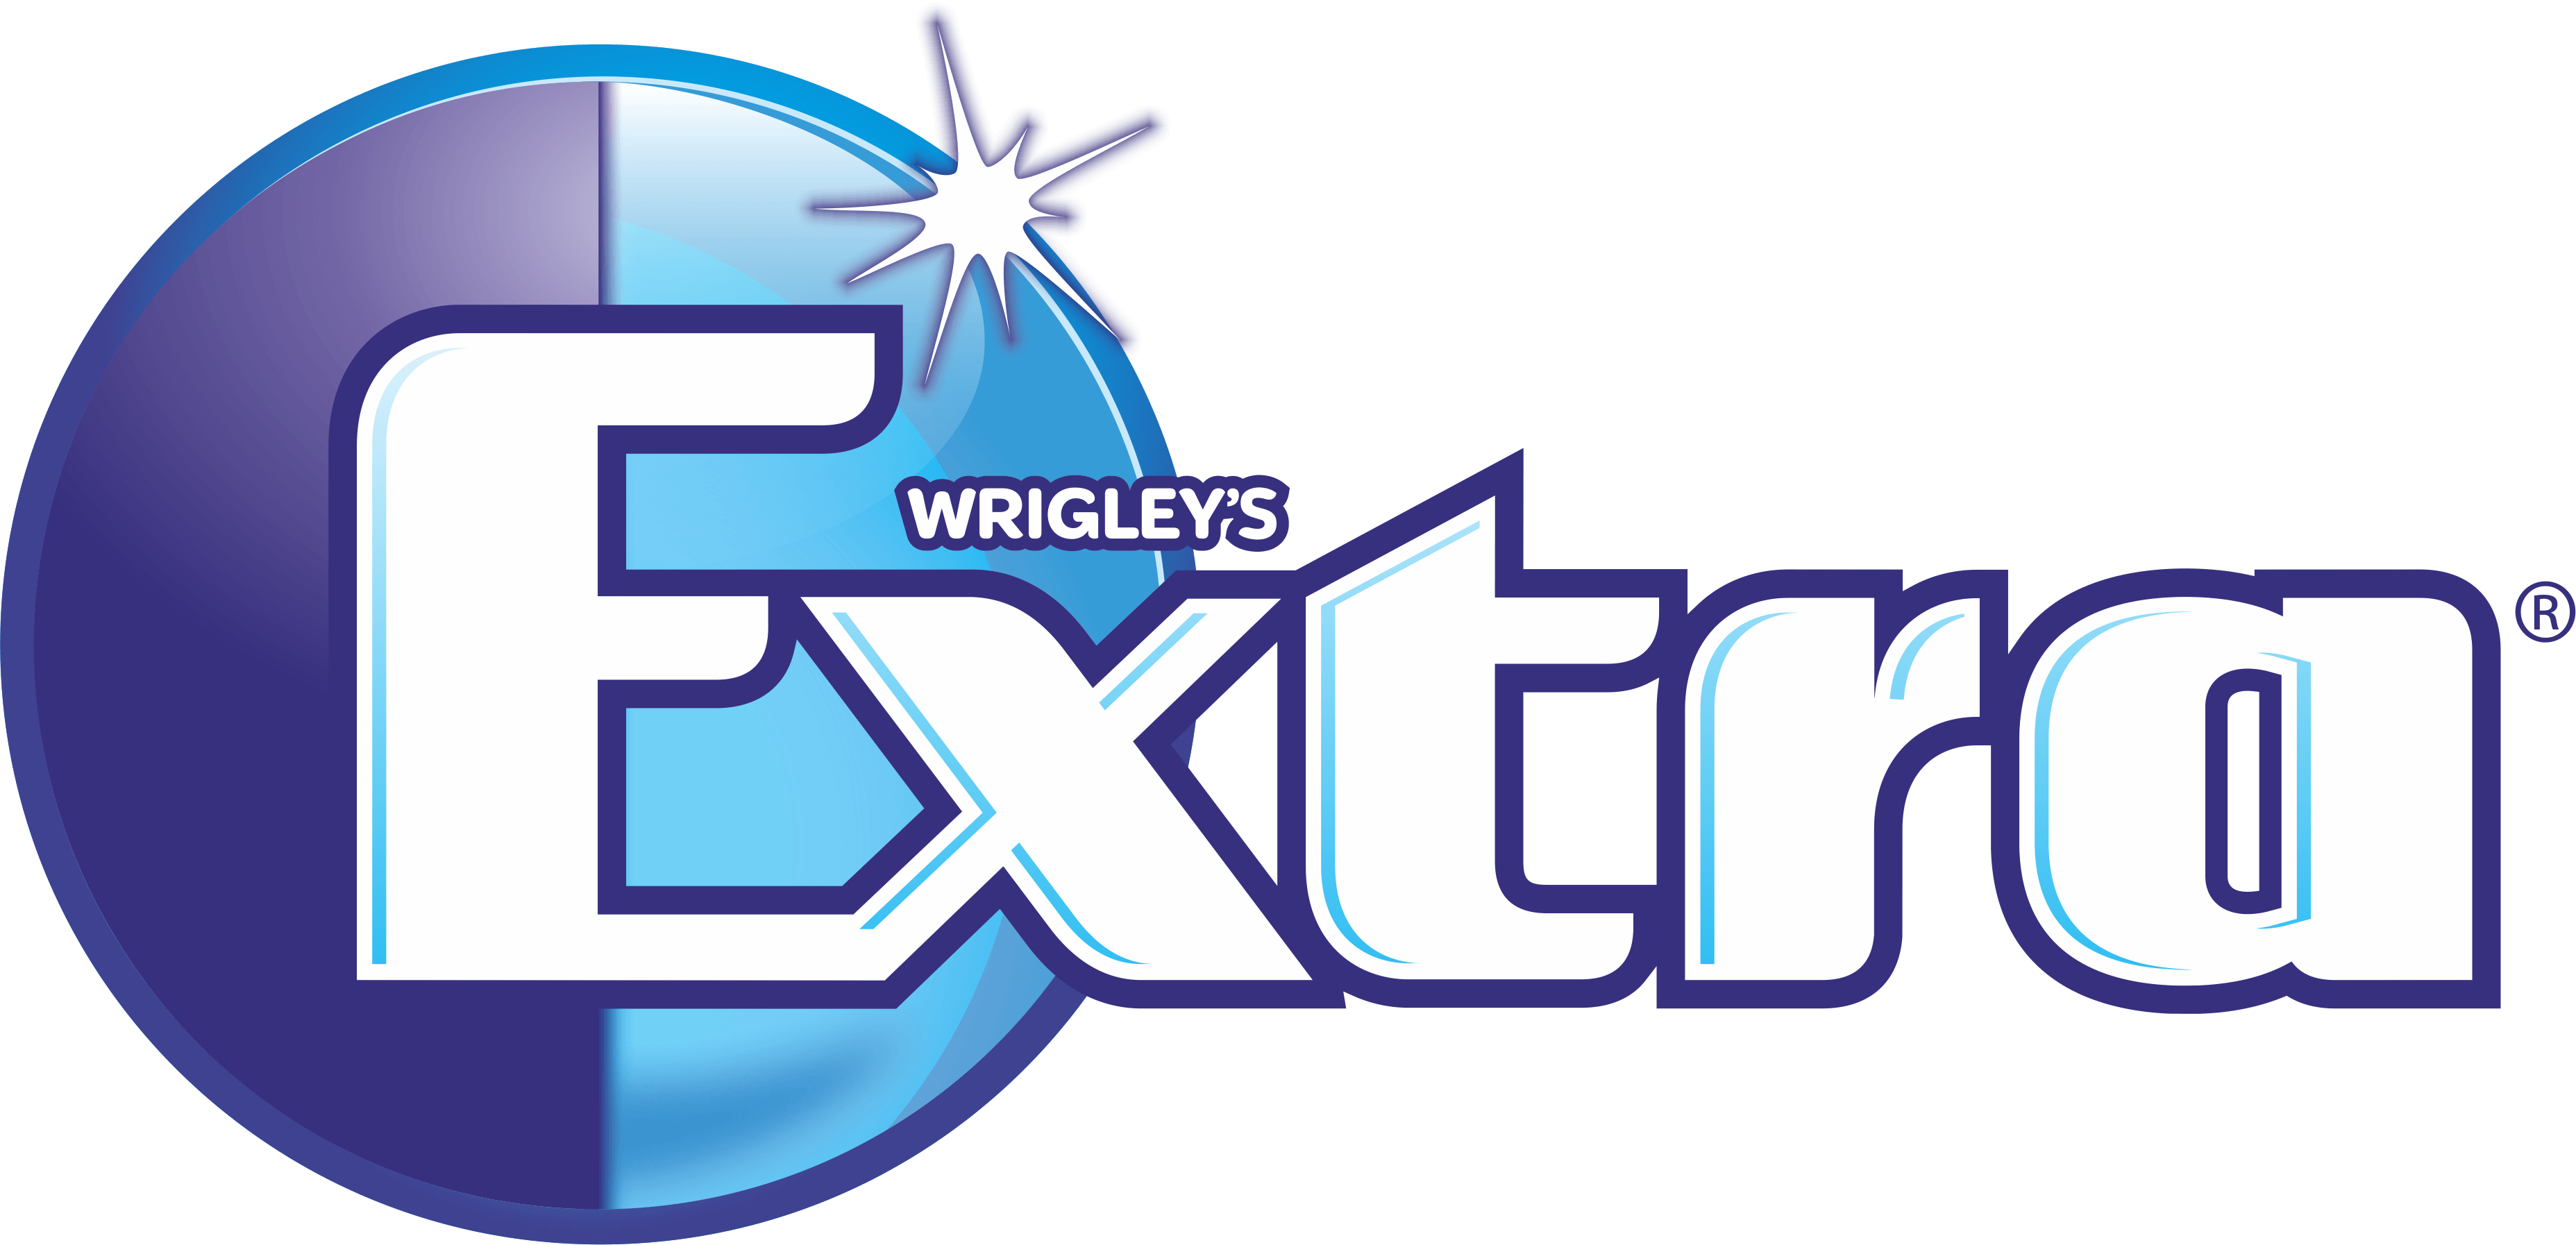 Extra Gum Logo - 9000+ Logo Design Ideas